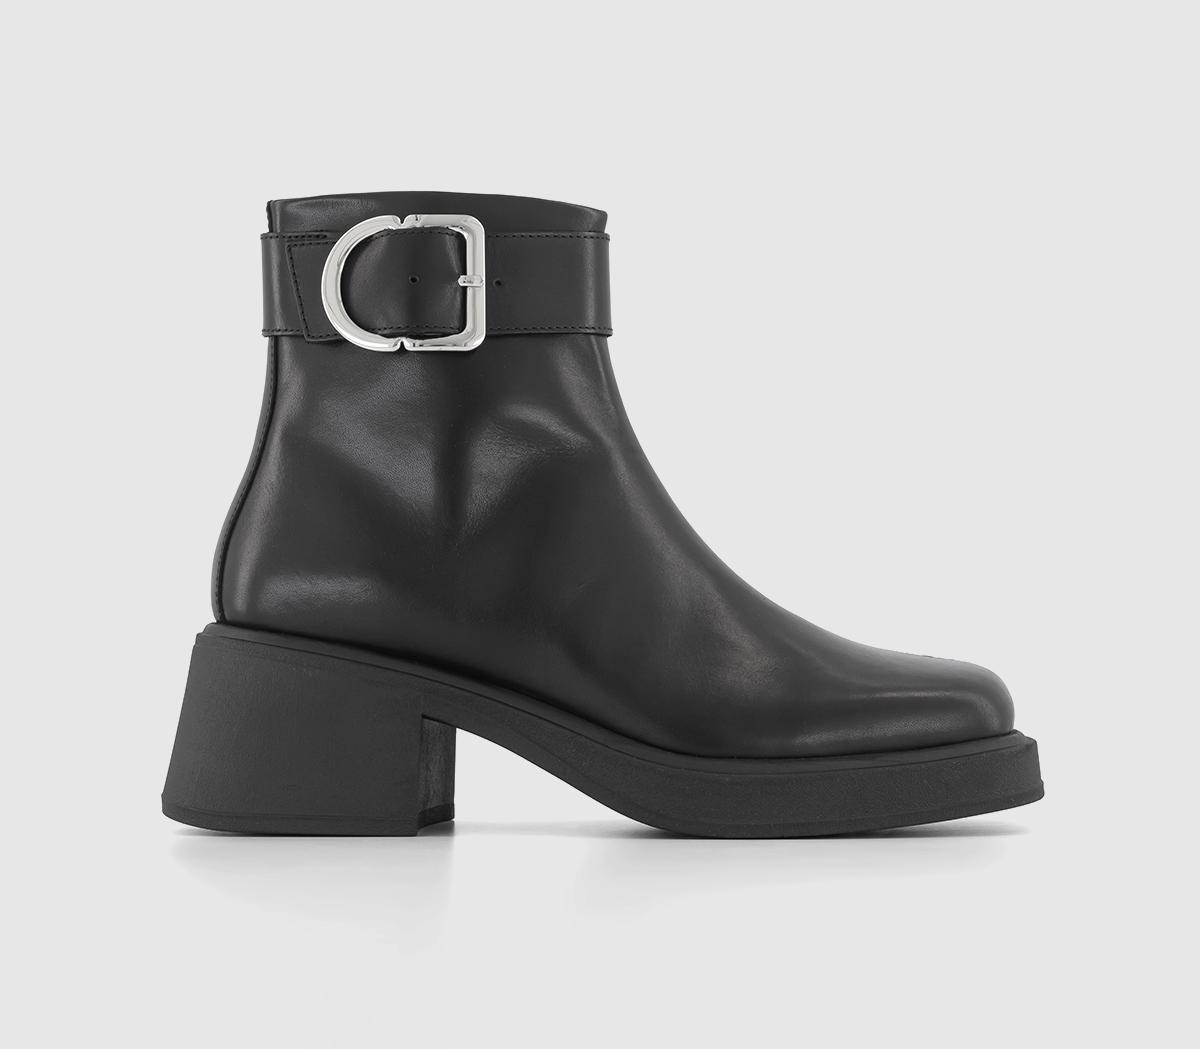 Vagabond Shoemakers Dorah Buckle Boots Black - Women's Leather Boots